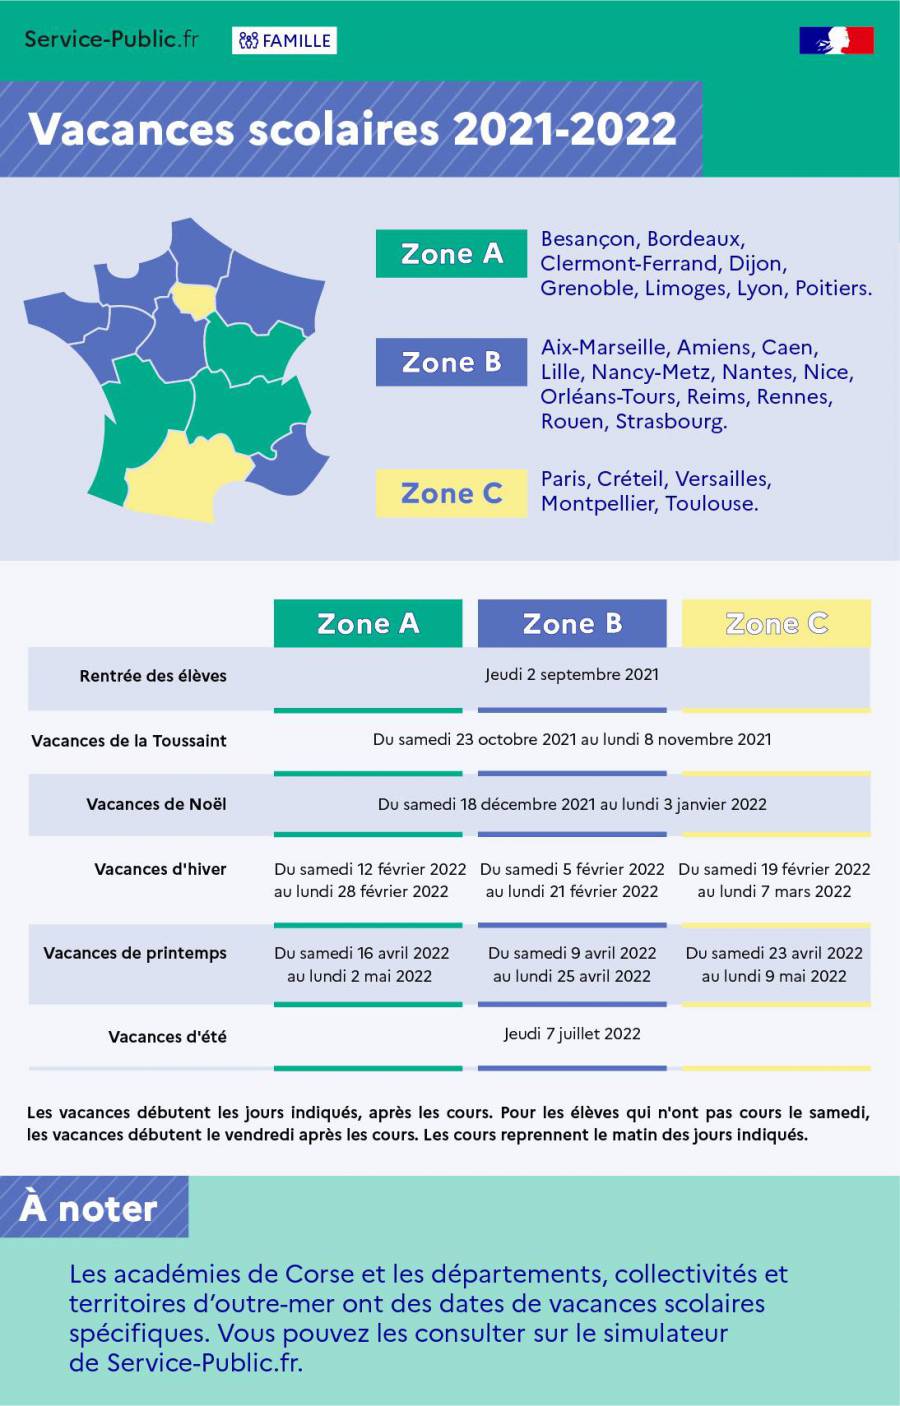 Hérault - Dates des vacances 2021-2022 : Pour l'Hérault c'est la zone C !